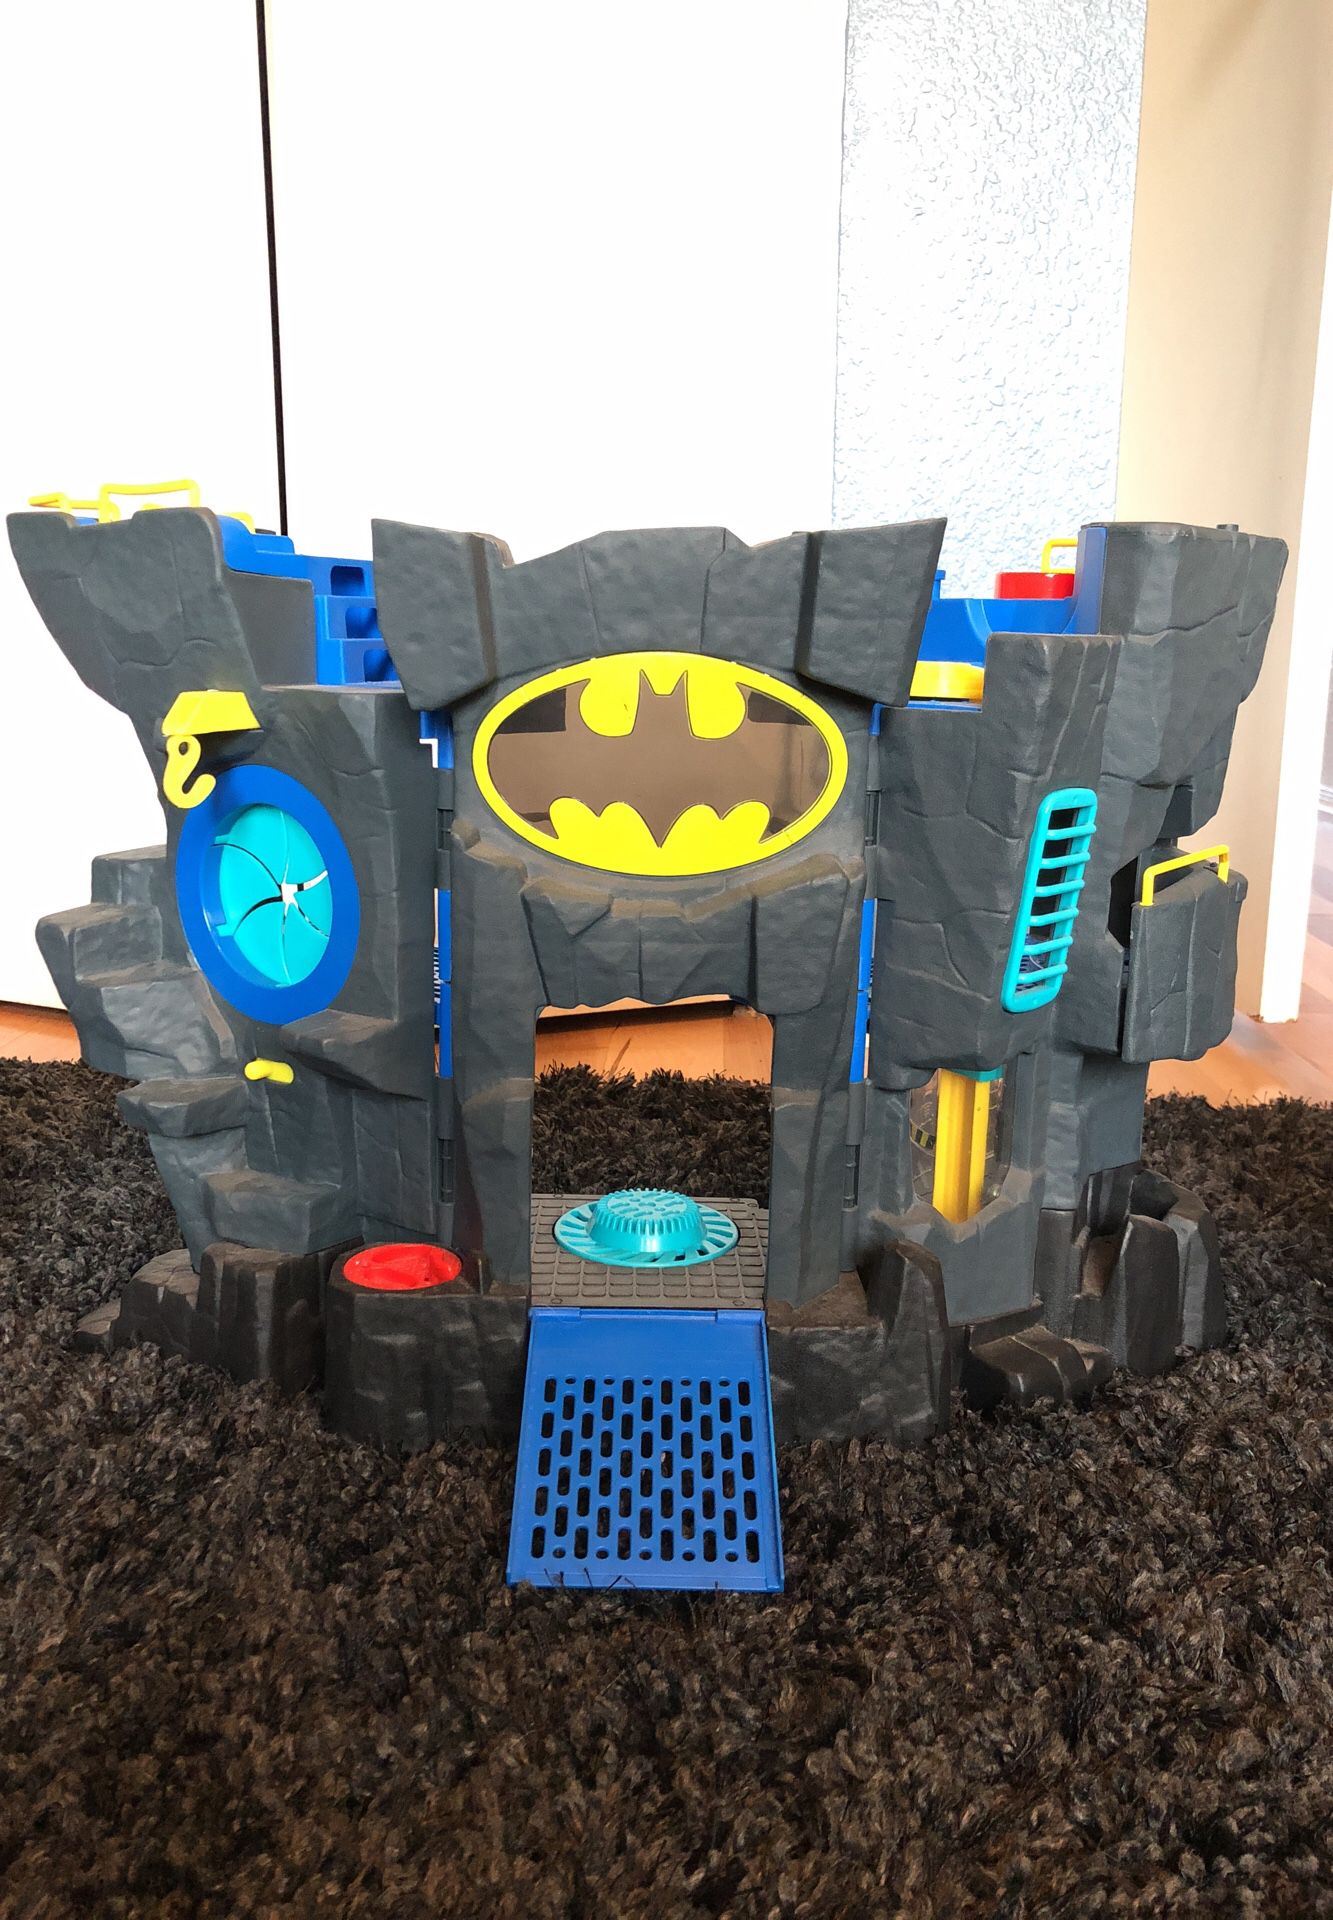 Batman imaginext toys